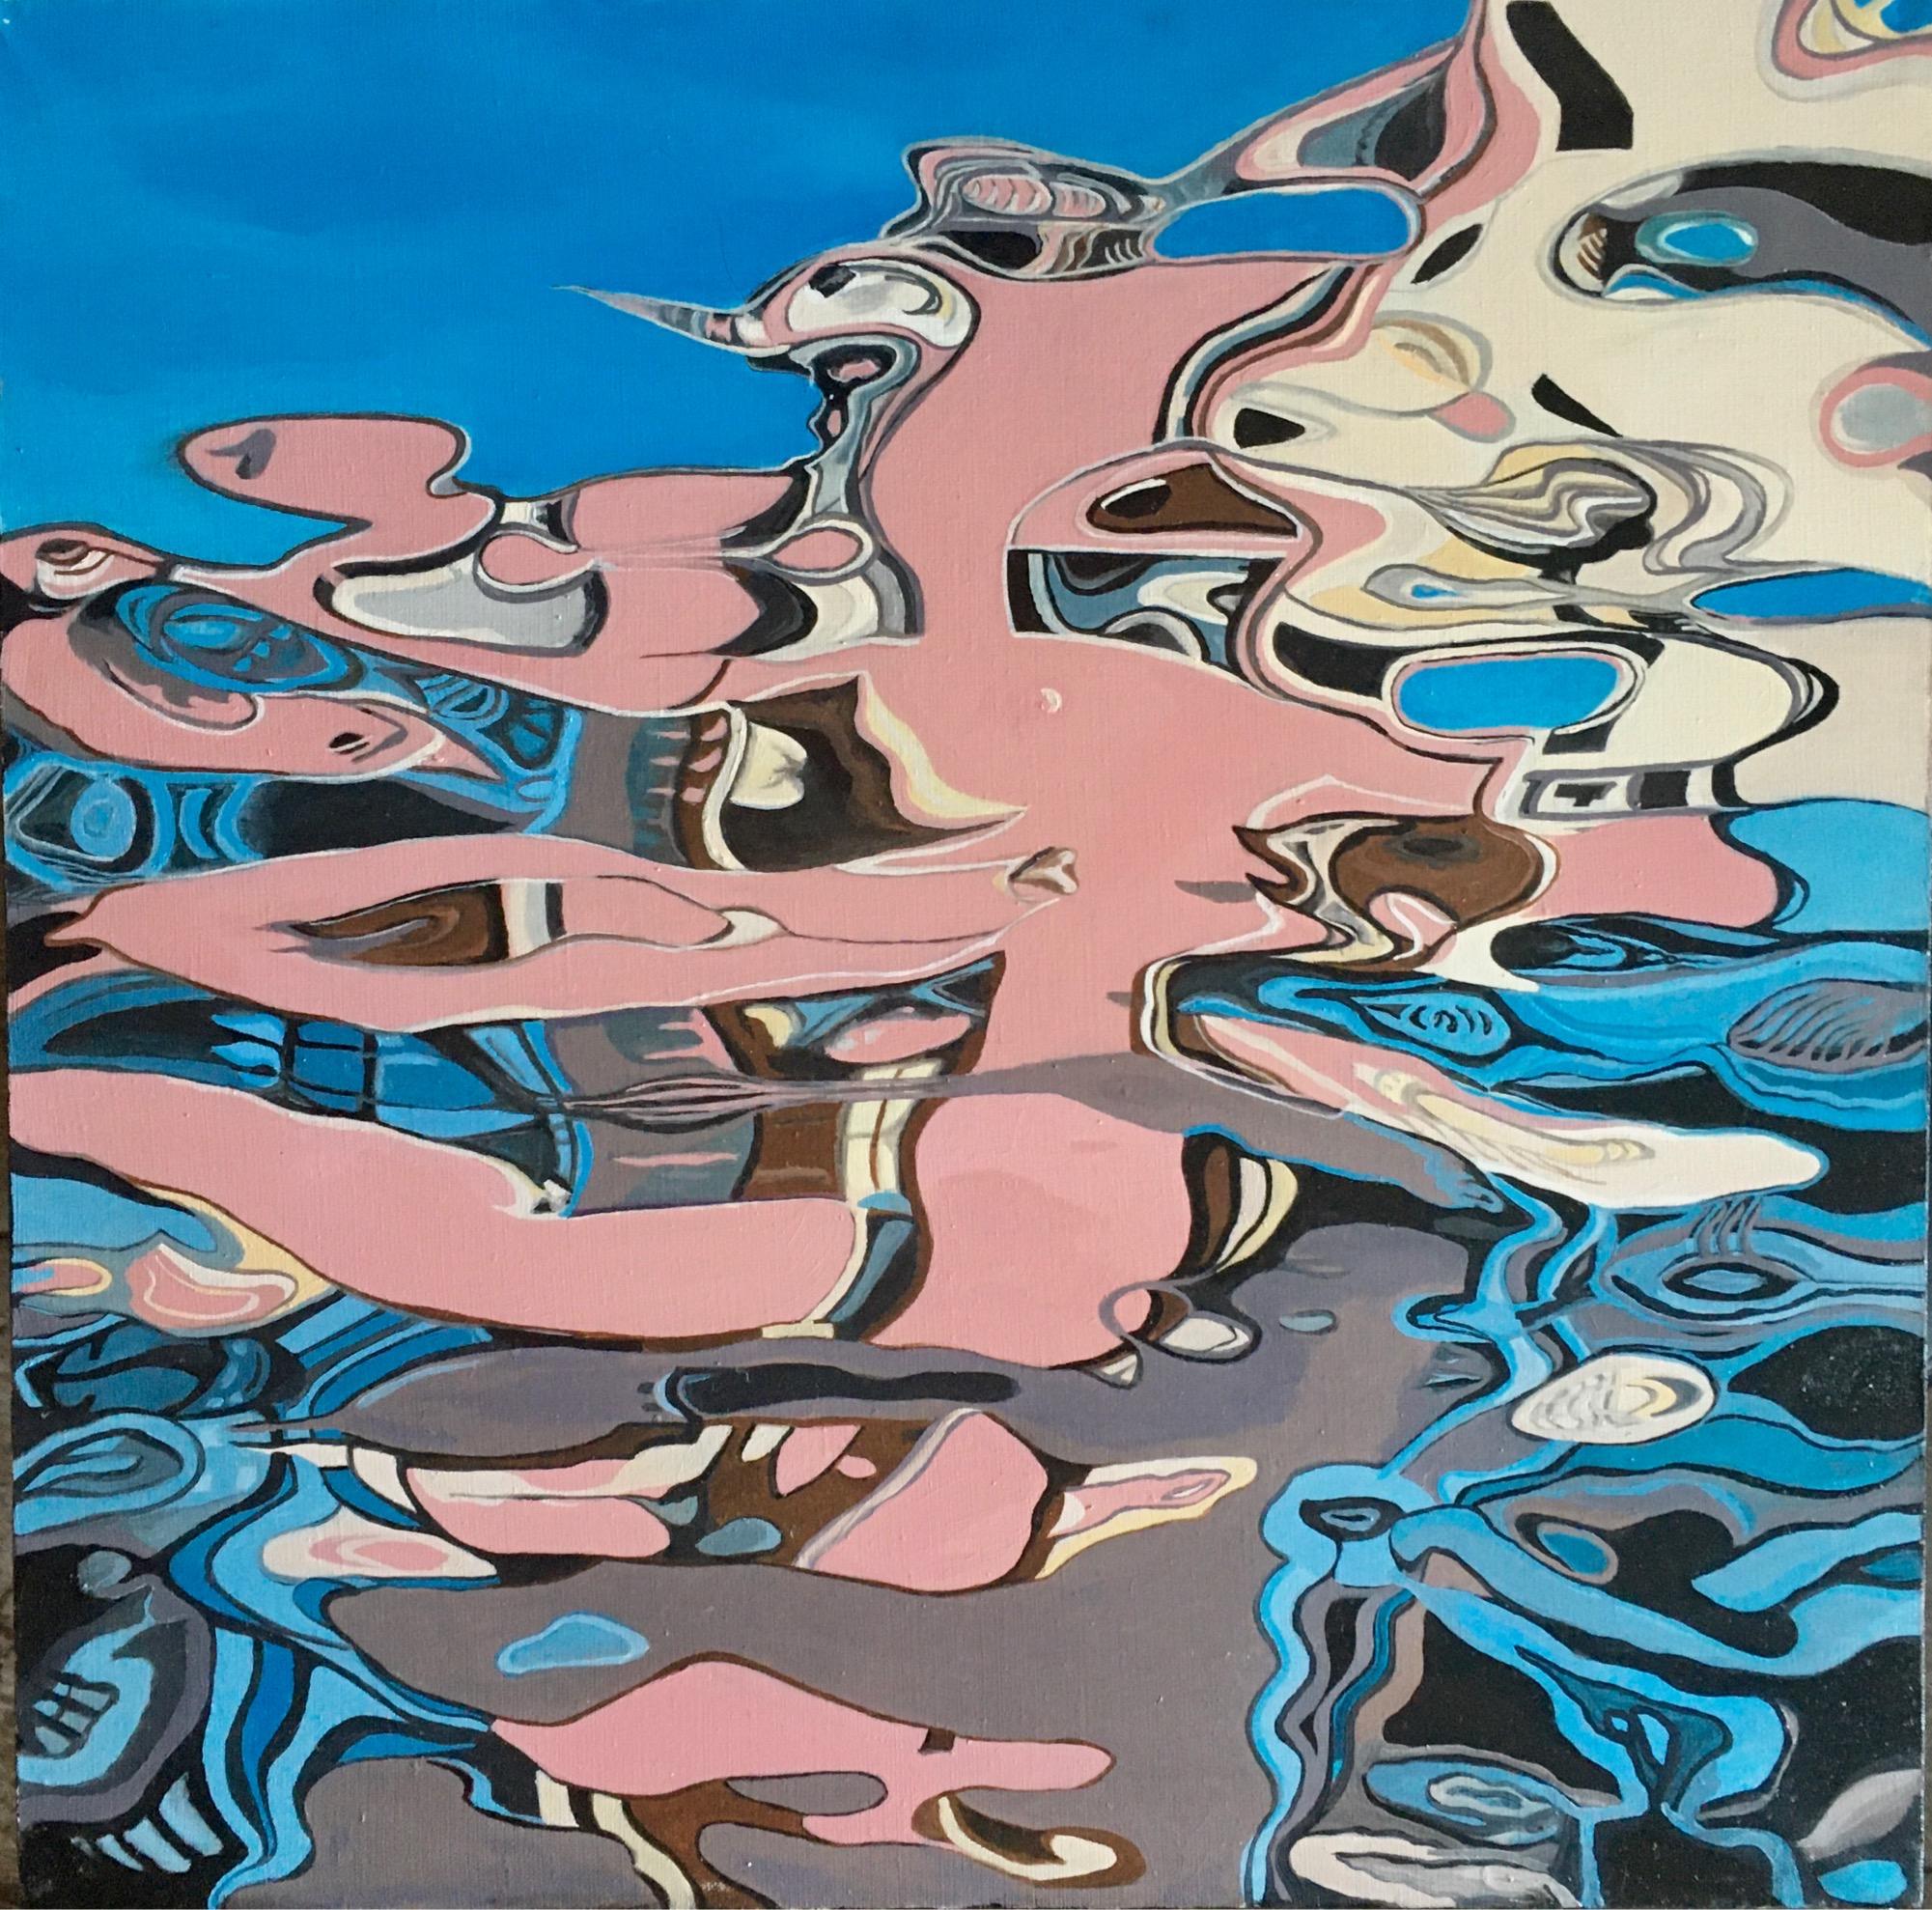 Reflection II-abstraktes Gemälde, in Himmelblau, Rosa, Beige, Grau und Grautönen gemalt